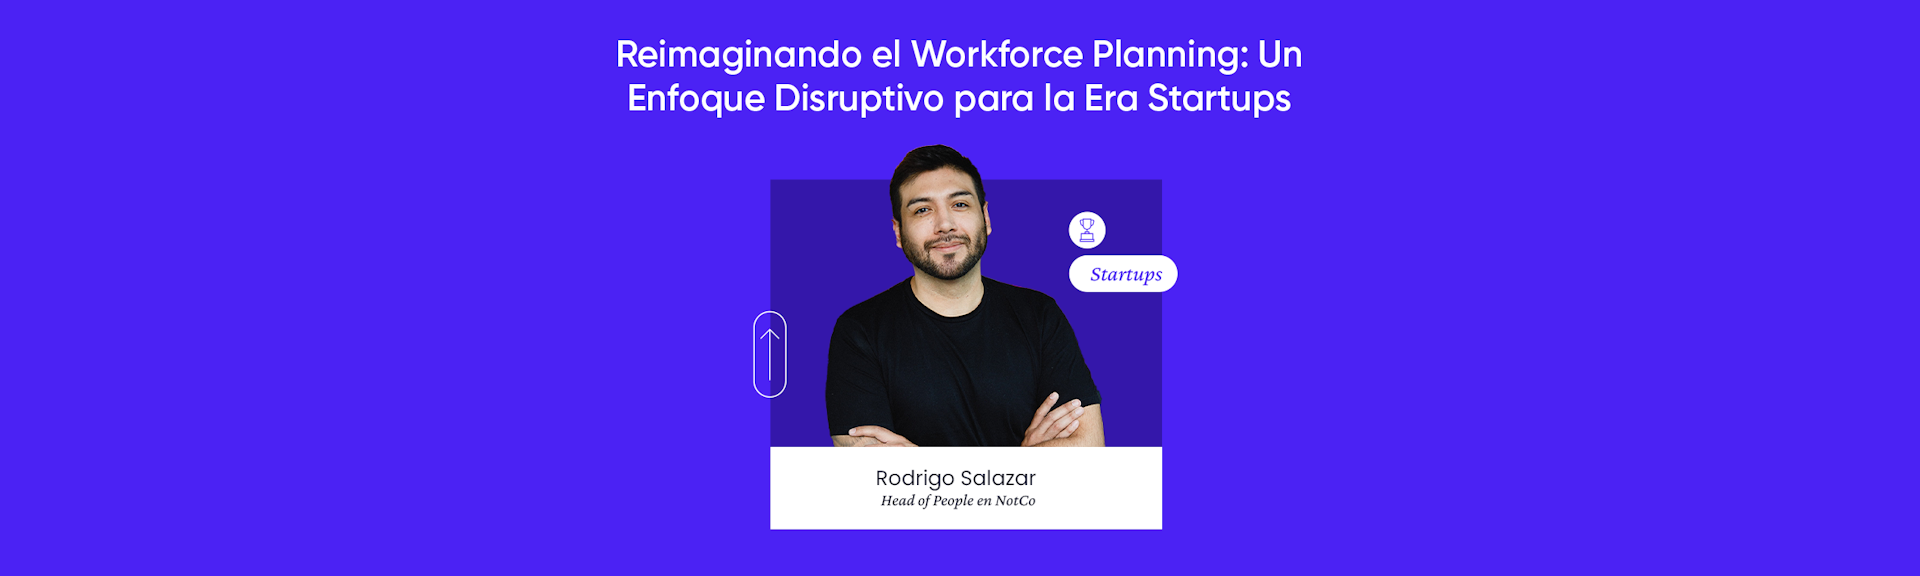 Reimaginando el Workforce Planning: Un Enfoque Disruptivo para la Era Startups